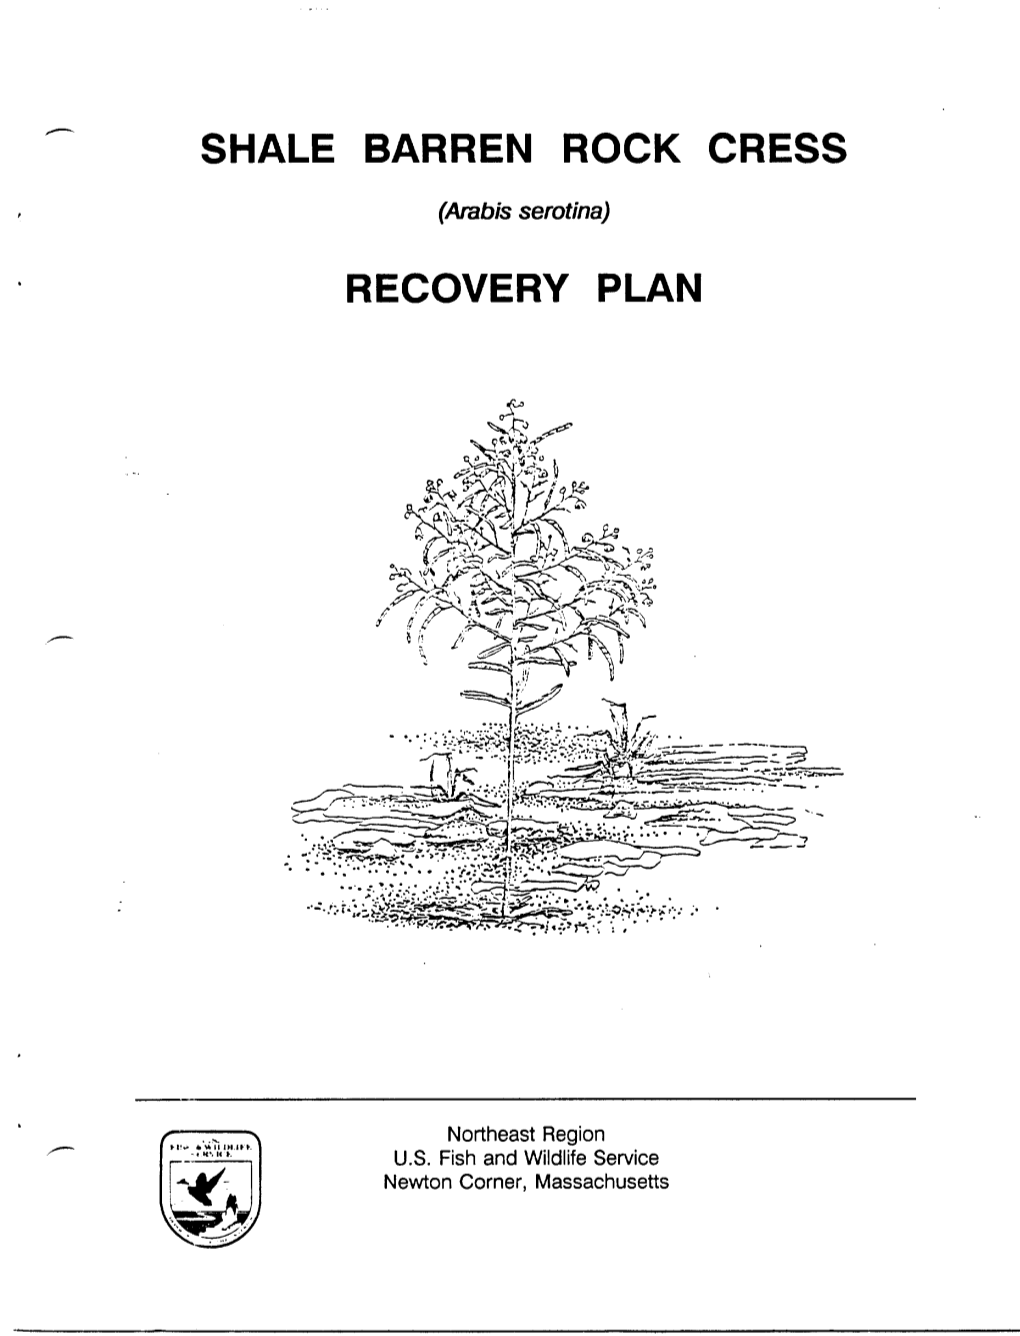 Shale Barren Rock Recovery Plan Cress